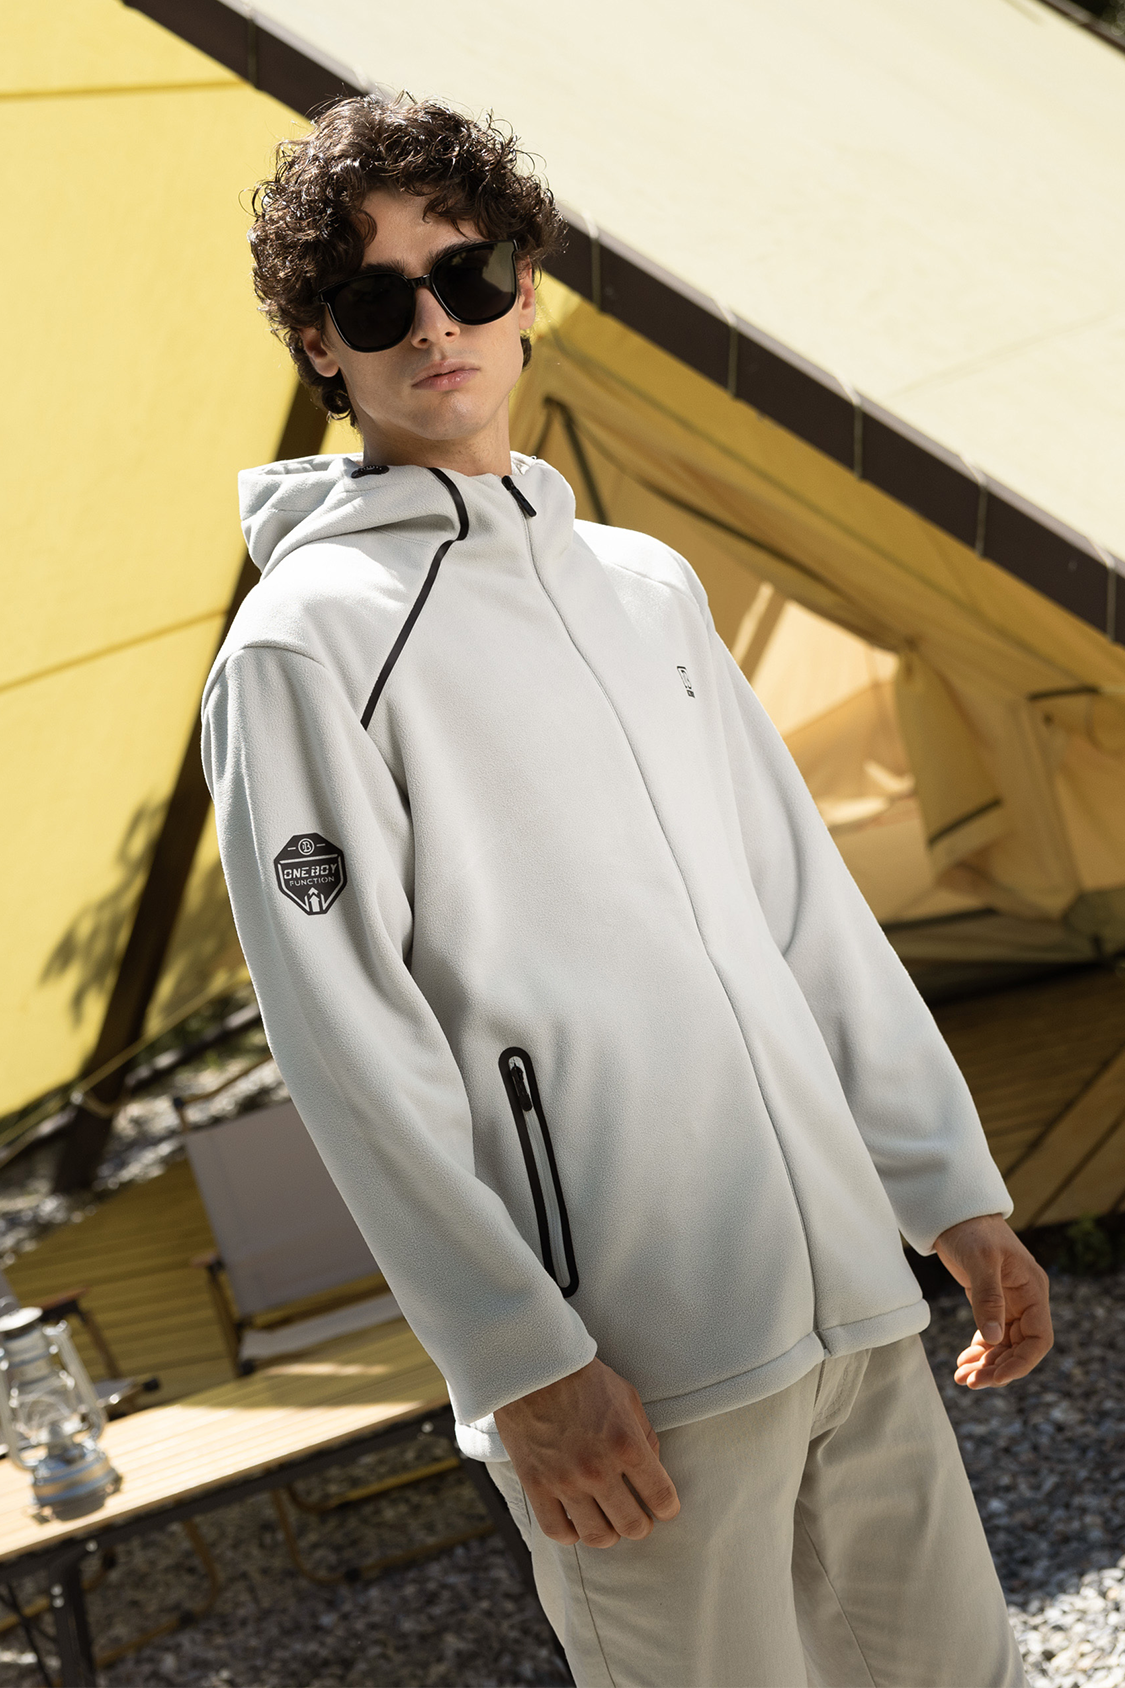 Aquaproof Windresist Light 3-in-1 Interchange Jackets For Men | Oneboy® |  Outdoor Activities Protective Clothing